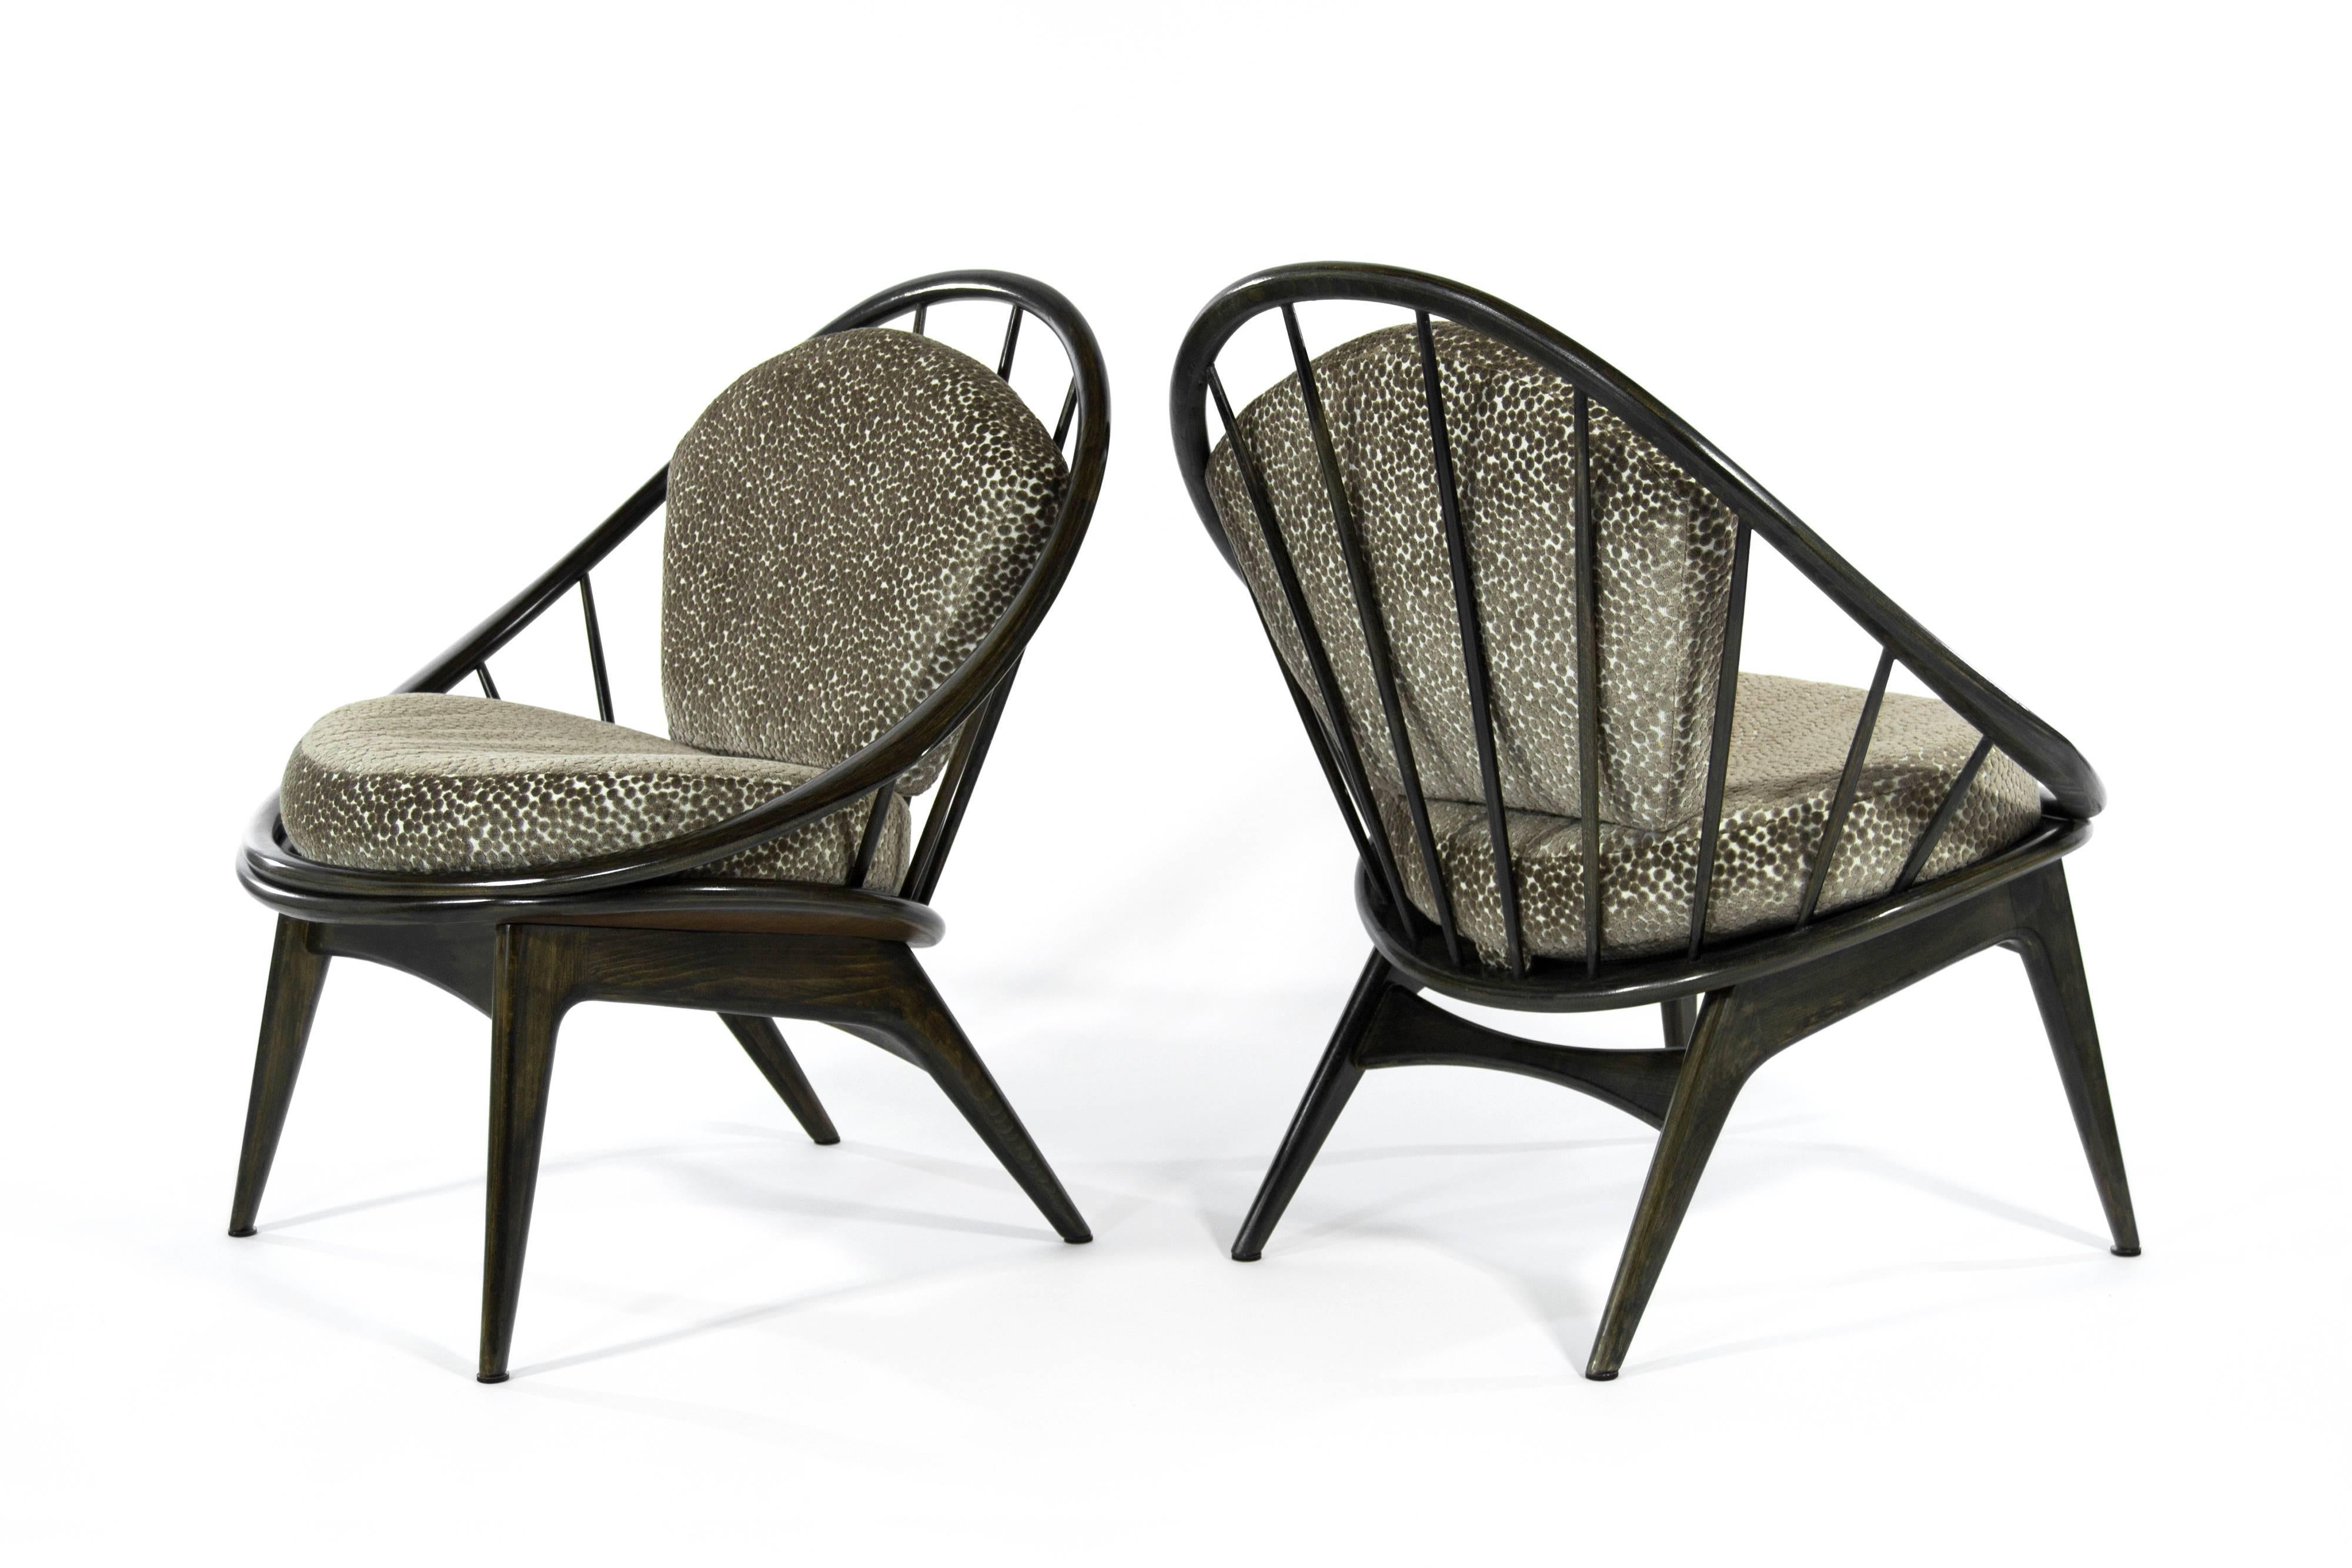 Danish Ib Kofod-Larsen for Selig Lounge Chairs, 1959